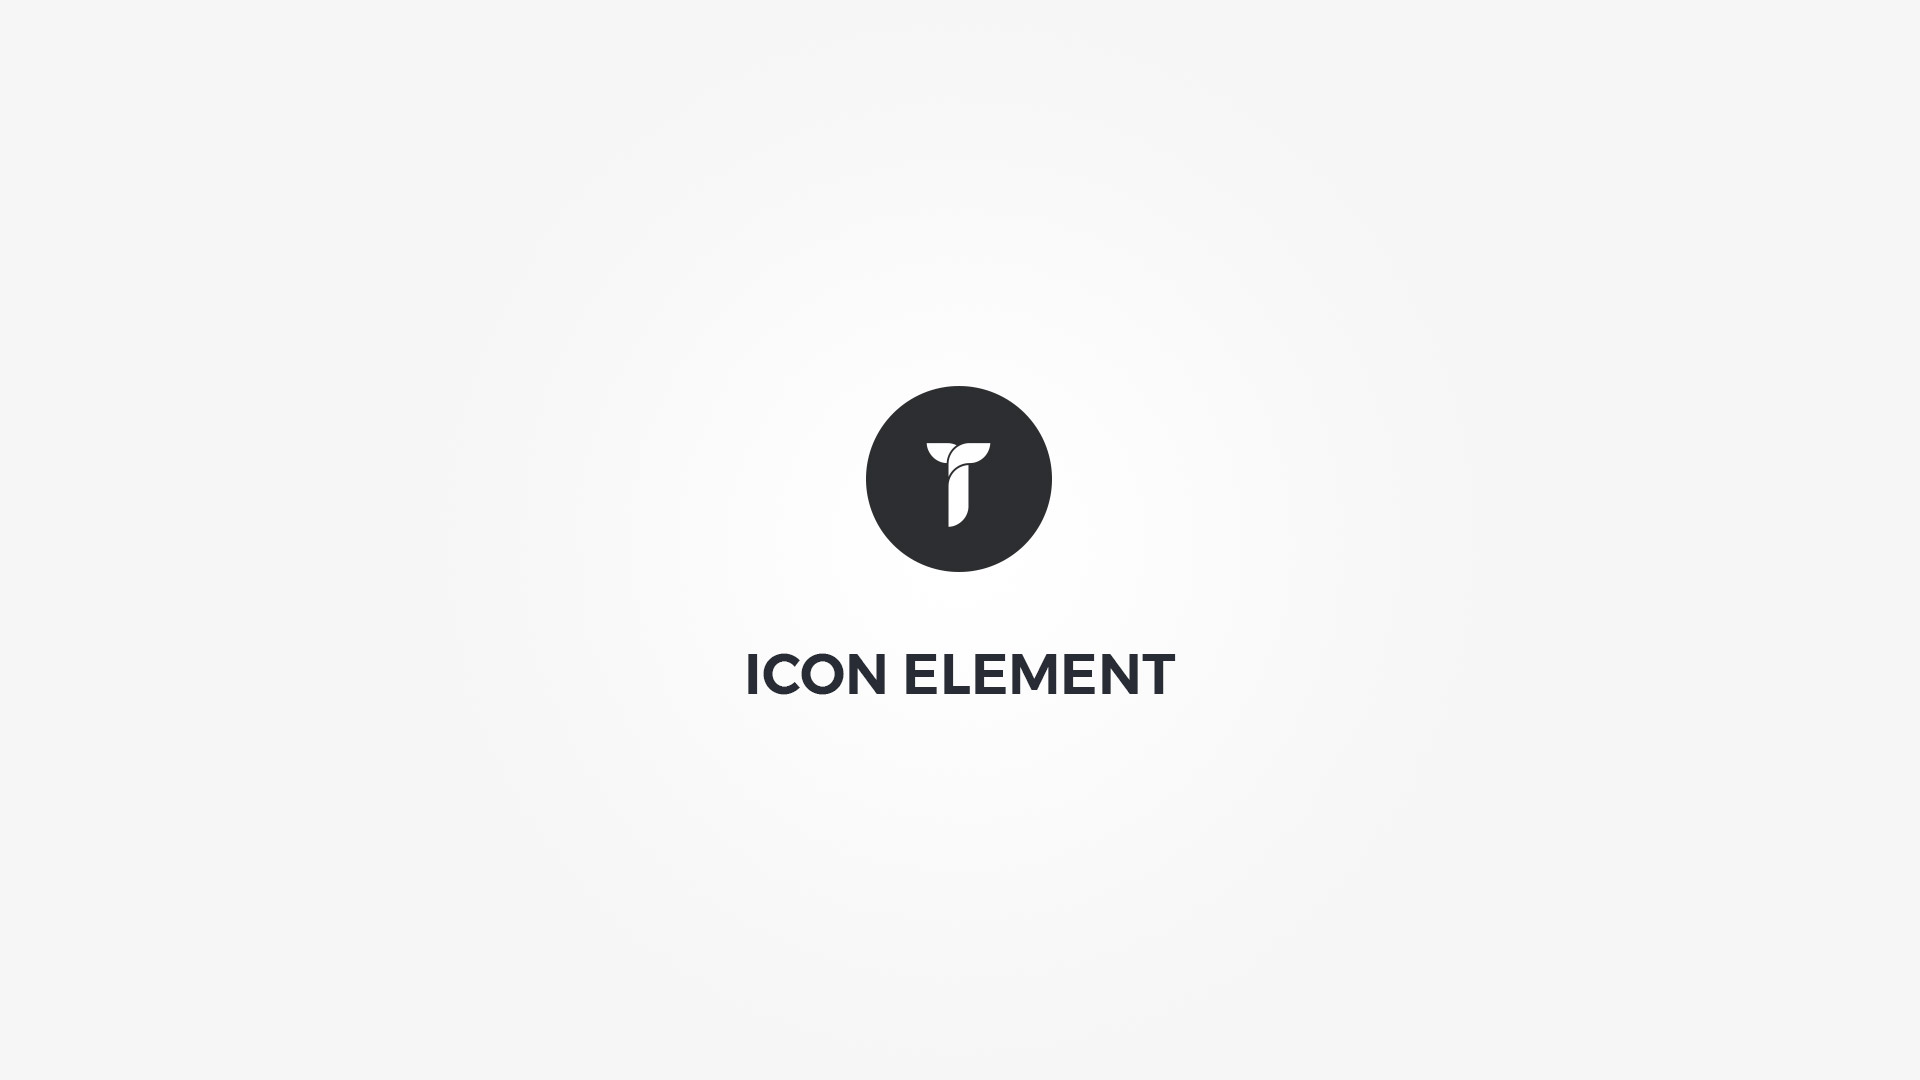 Creatus WordPress Theme Icon Element